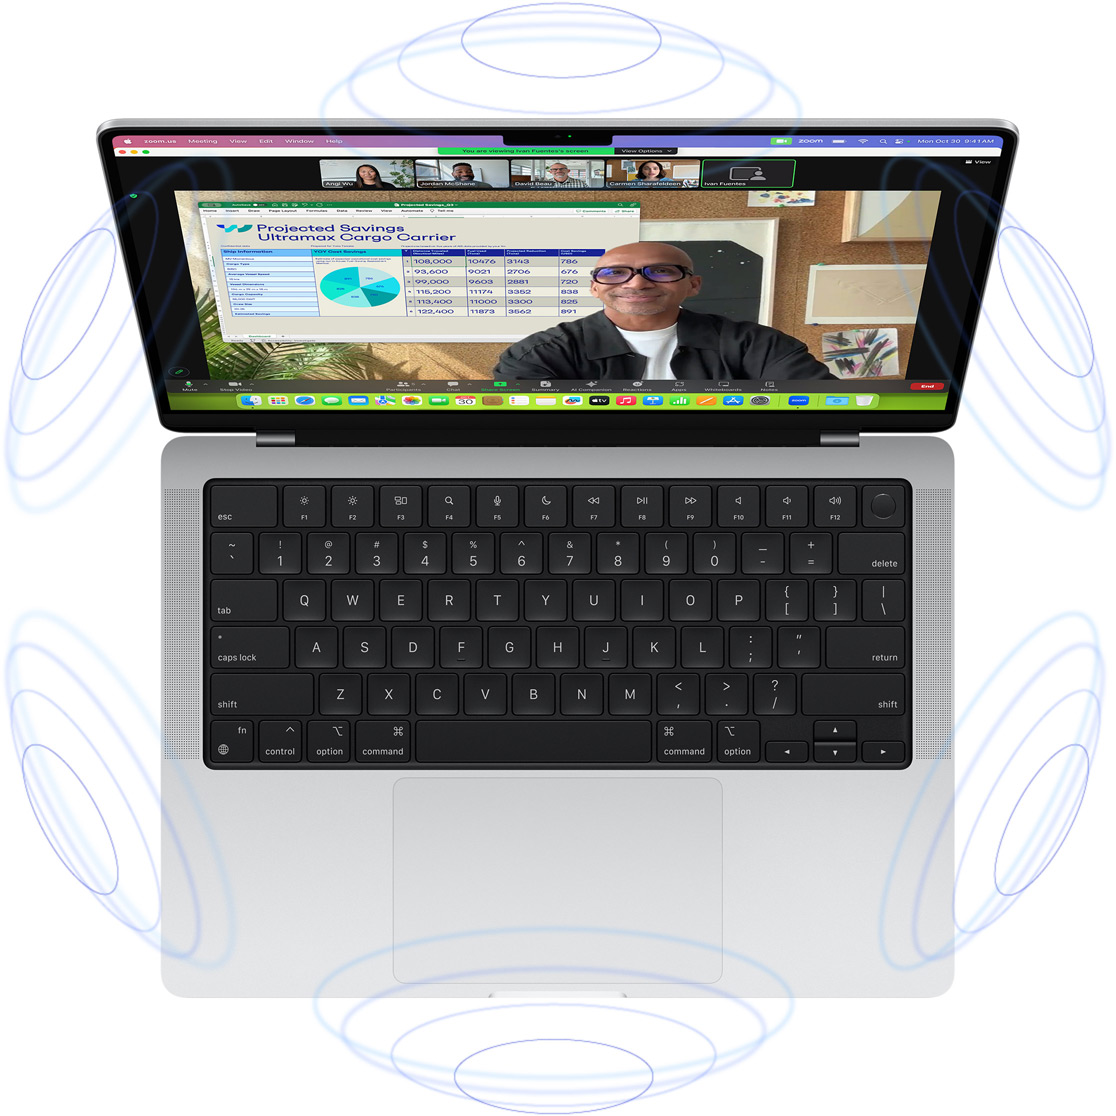 FaceTime-videopuhelu MacBook Prolla, jonka ympärille piirretyt siniset ympyrät viittaavat tilaäänen tuottamaan 3D-vaikutelmaan